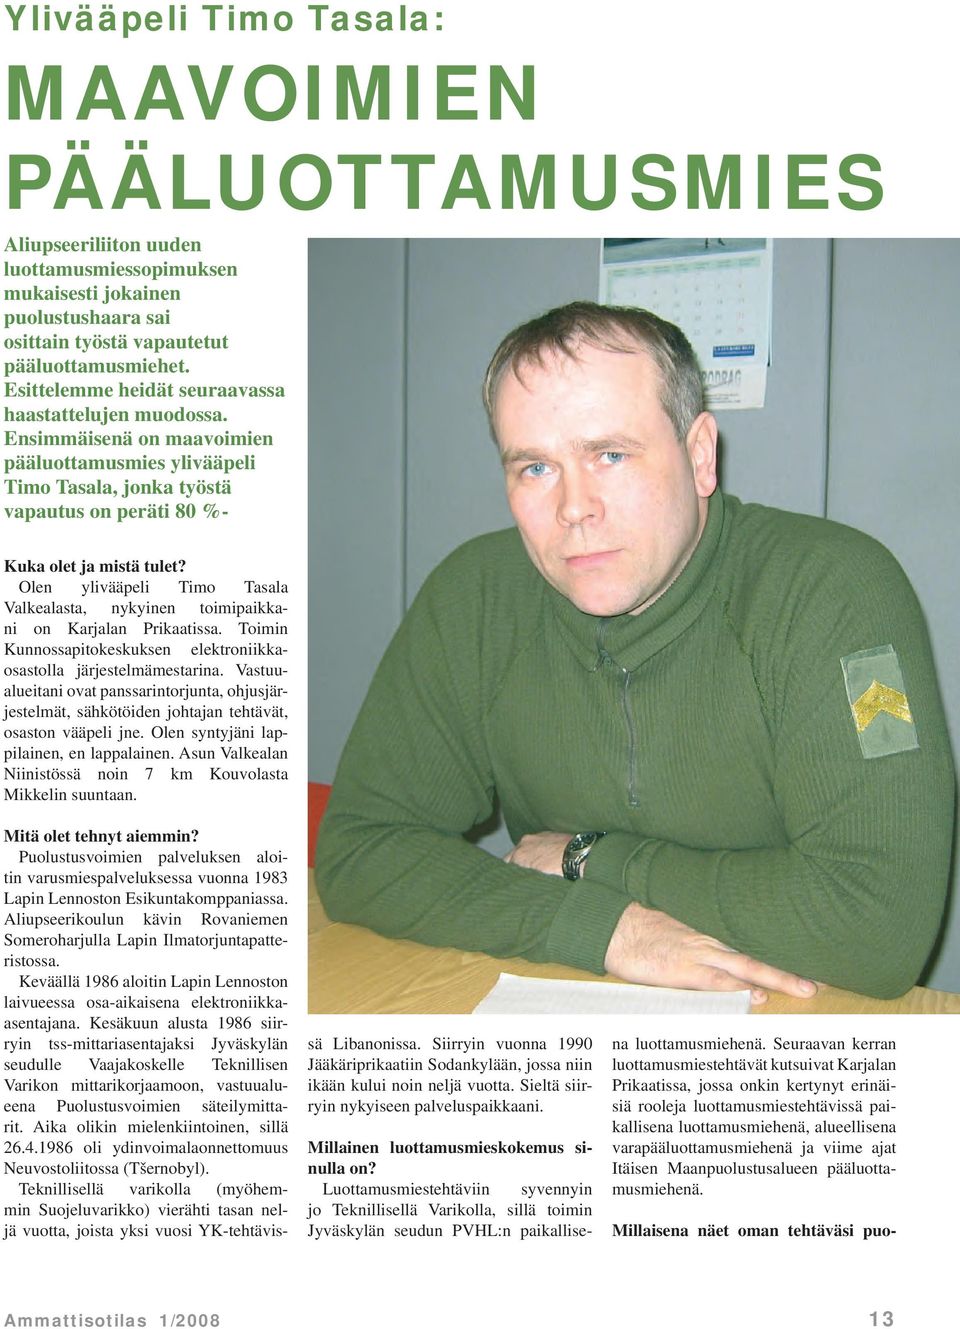 Olen ylivääpeli Timo Tasala Valkealasta, nykyinen toimipaikkani on Karjalan Prikaatissa. Toimin Kunnossapitokeskuksen elektroniikkaosastolla järjestelmämestarina.